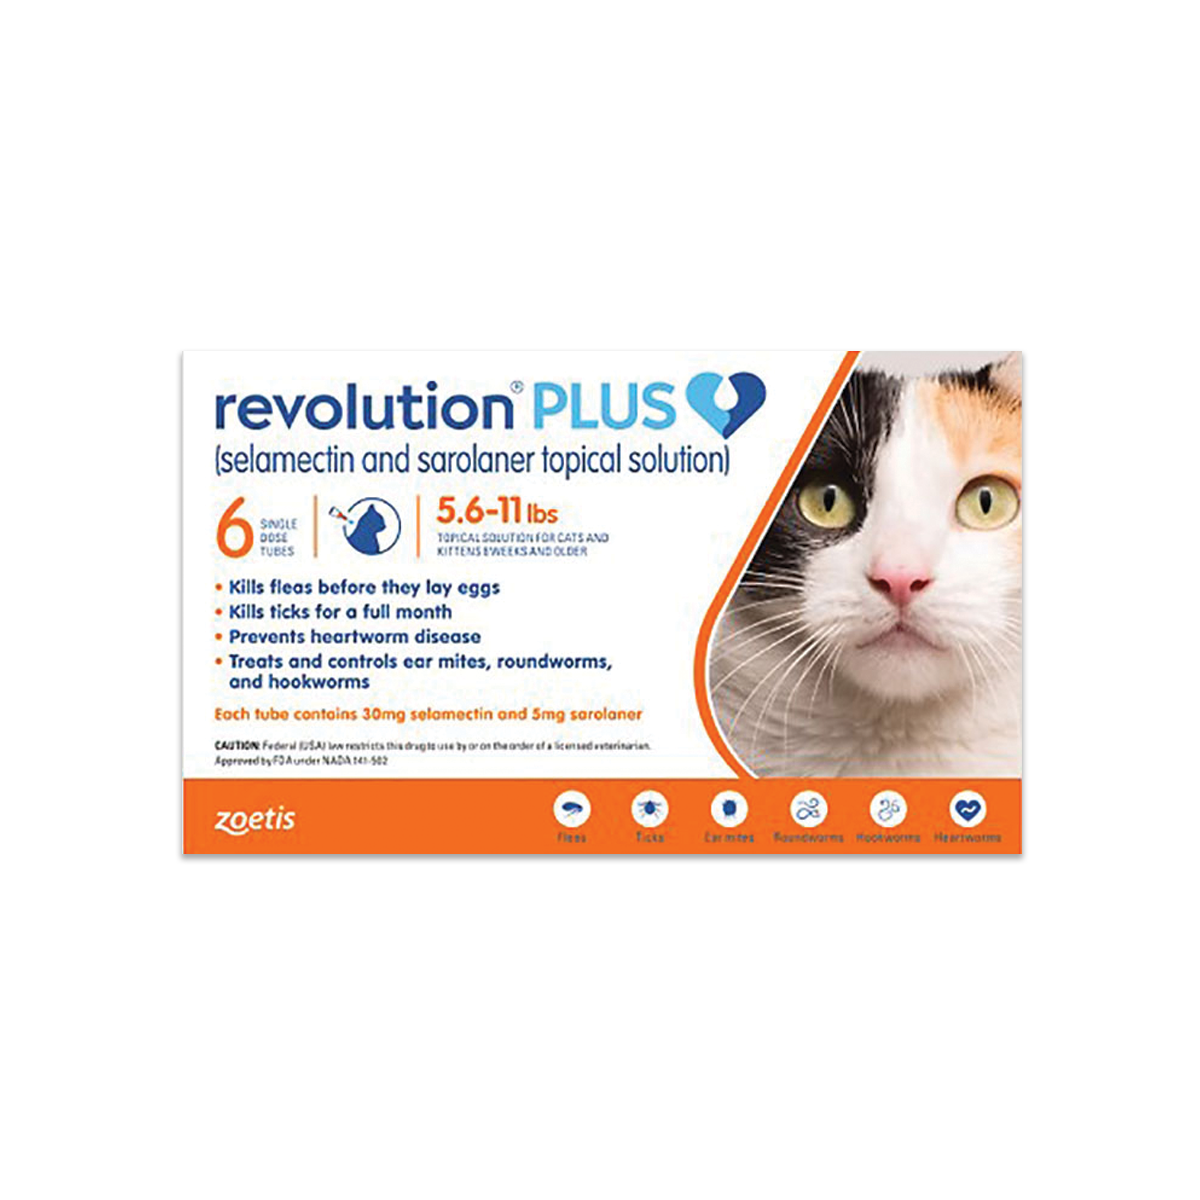 Revolution Plus for Cats เรโวลูชั่น พลัส ยาหยอดกำจัด เห็บ หมัดแมว น้ำหนัก 2.6-5.0 กิโลกรัม